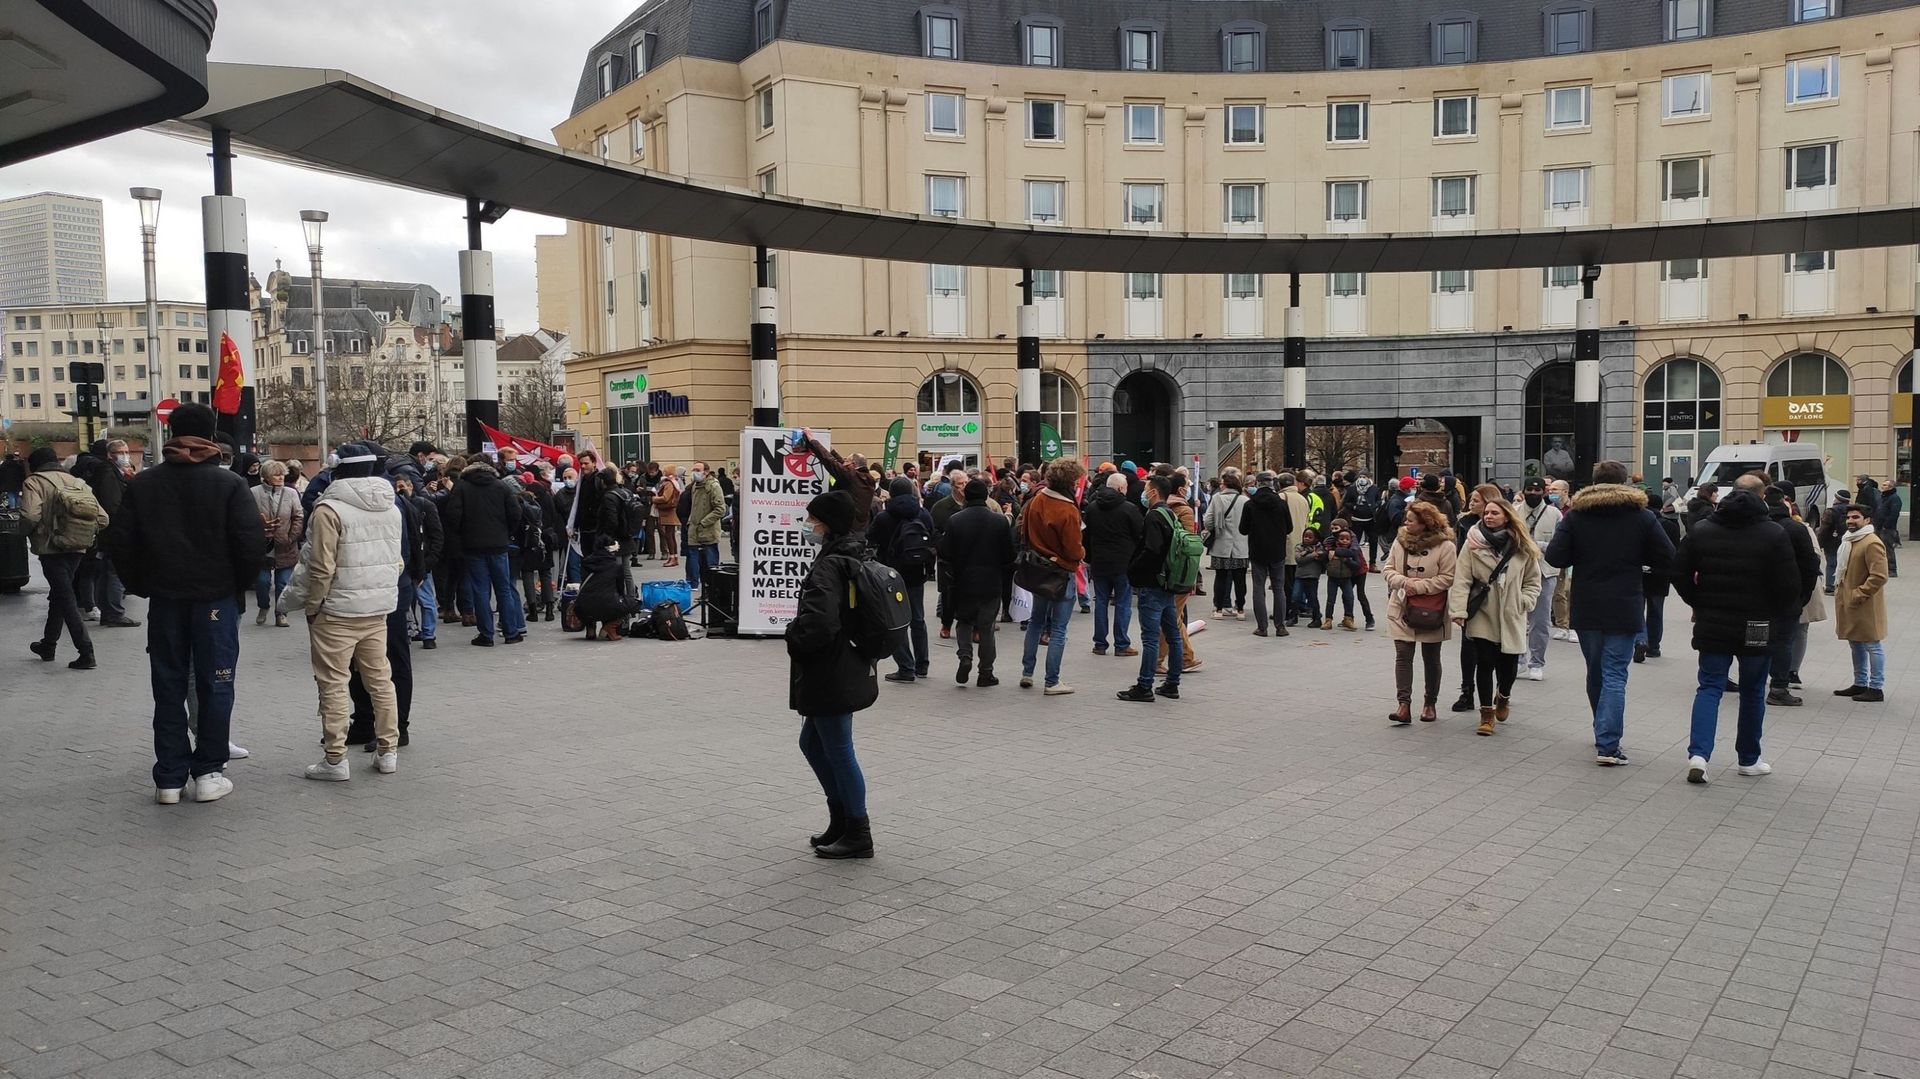 Environ 200 personnes, selon les organisateurs, se sont rassemblées devant la gare centrale de Bruxelles pour dire "non" à une guerre en Ukraine et "non" à une augmentation du budget de la défense pour financer les guerres, à Bruxelles, samedi 05 février 